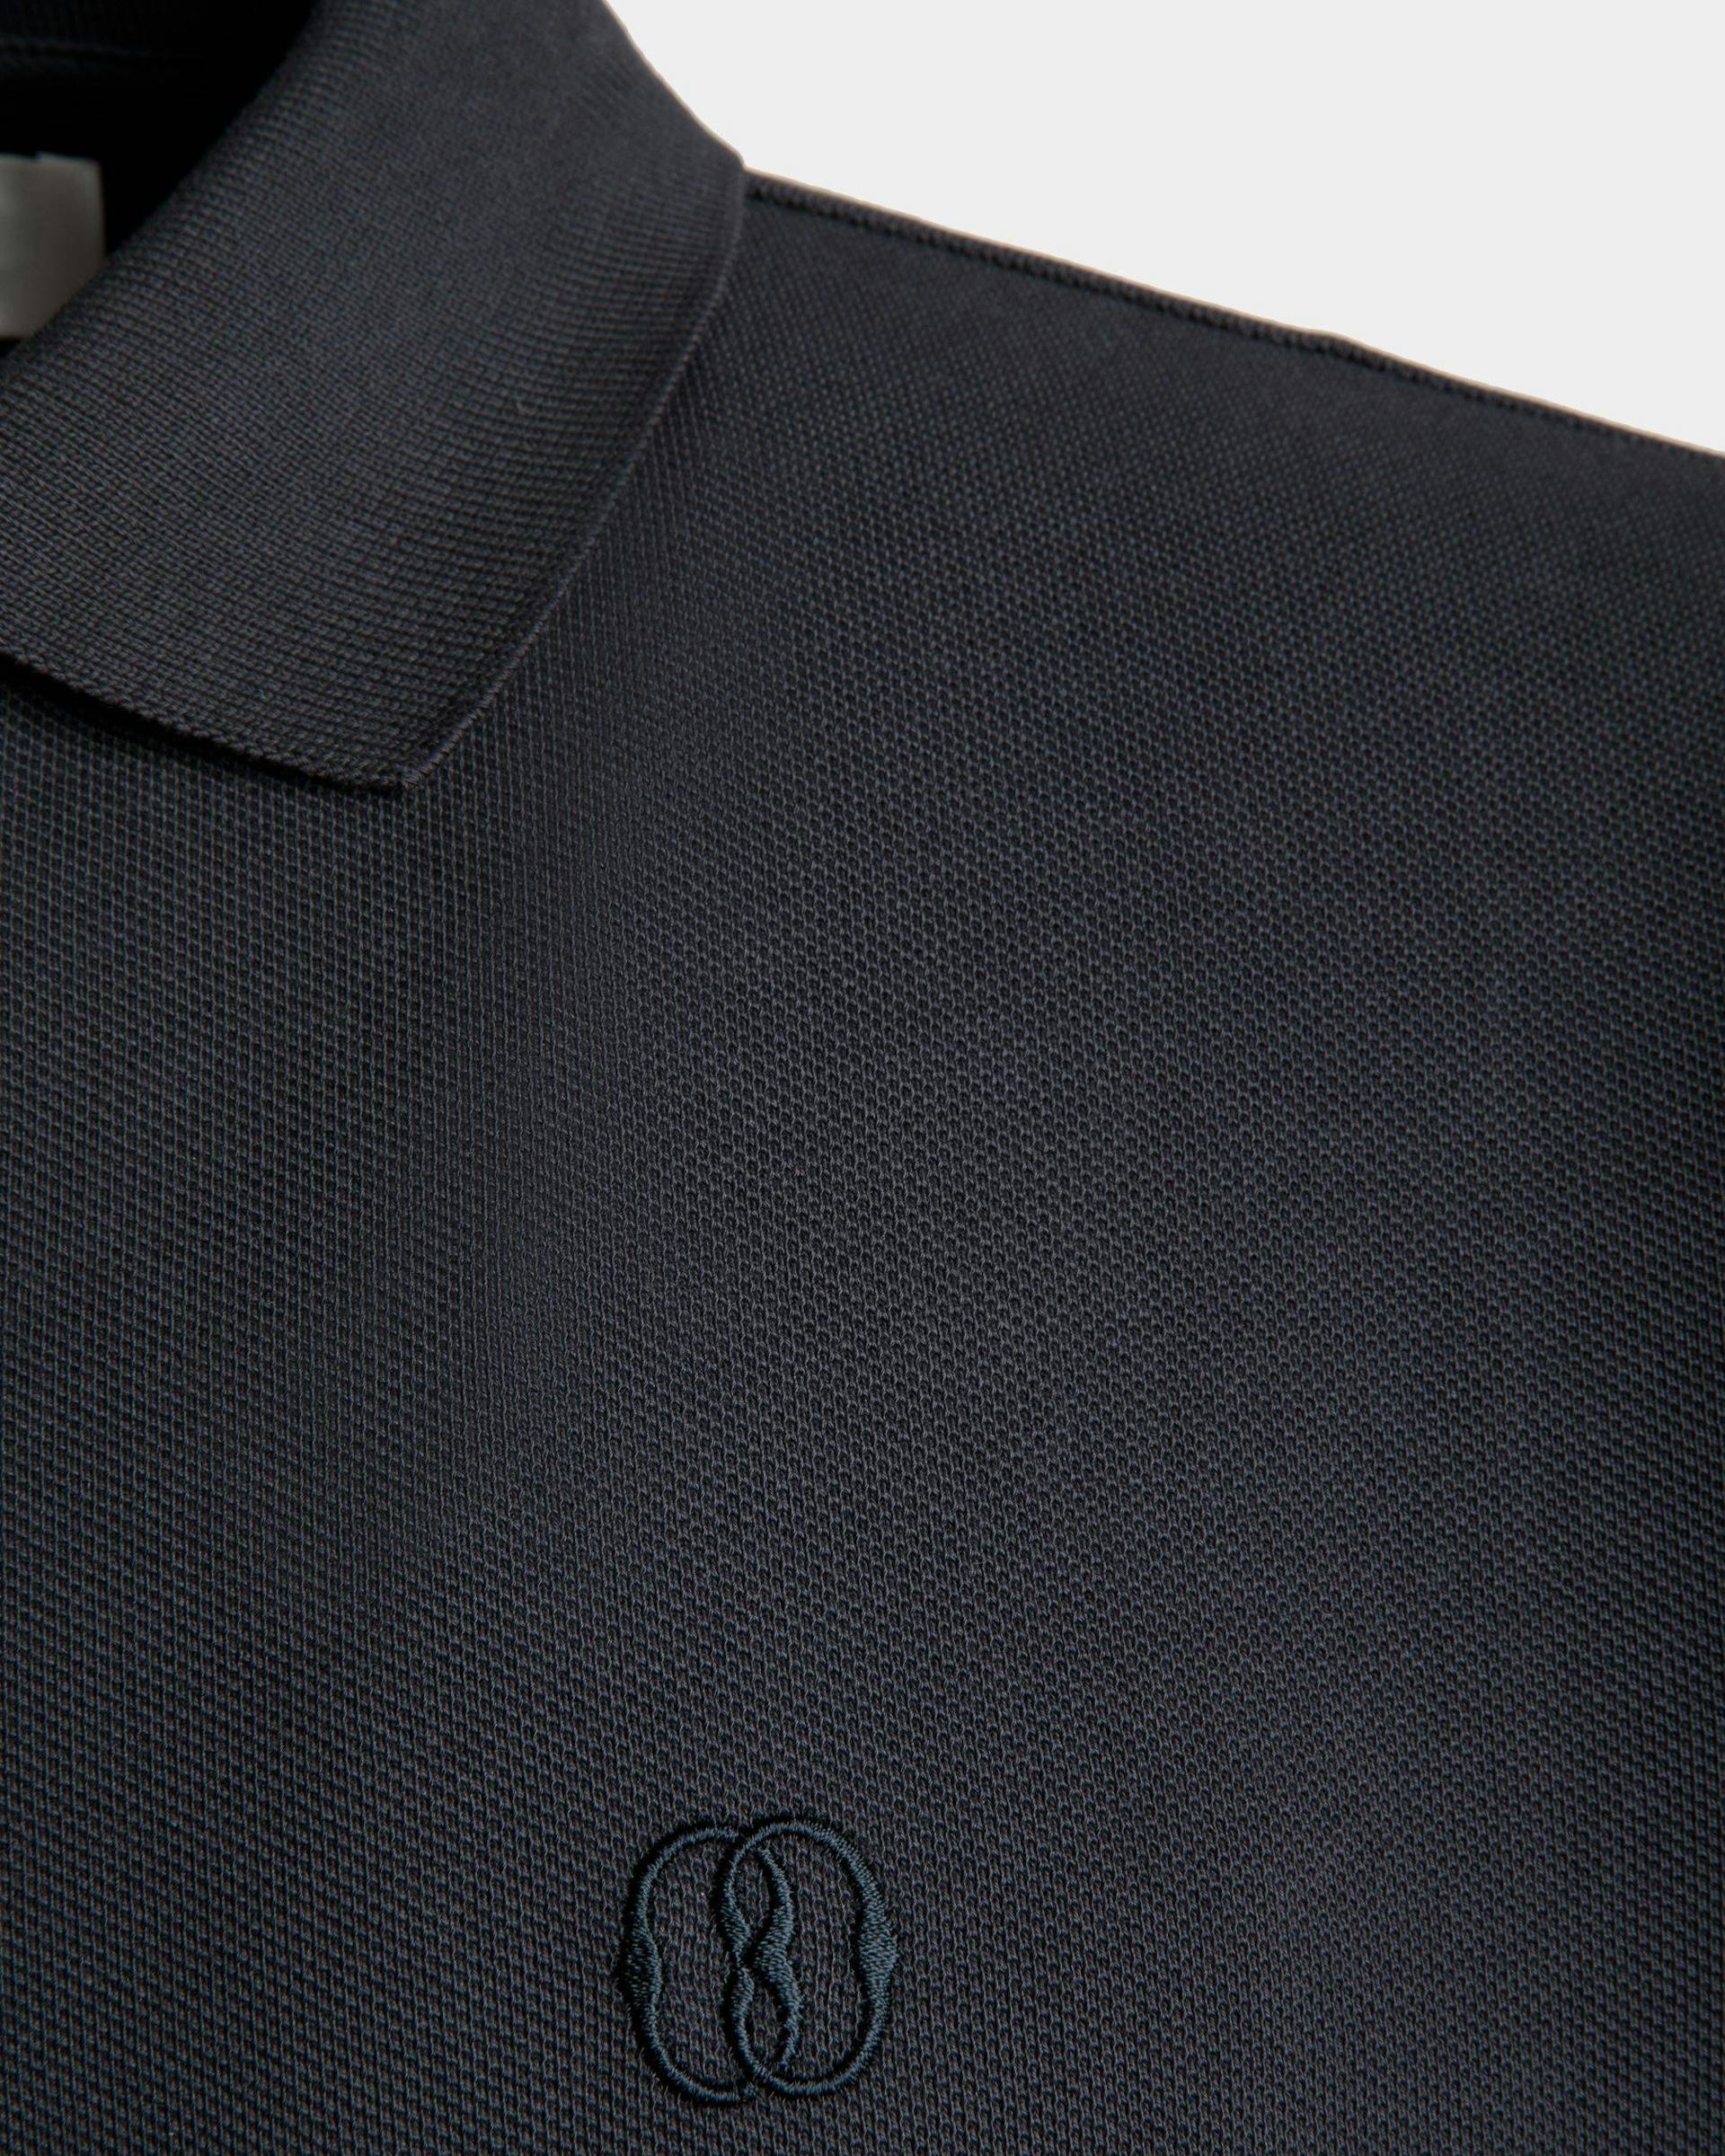 Kurzarm-Poloshirt Aus Baumwolle in Mitternachtsblau - Herren - Bally - 02